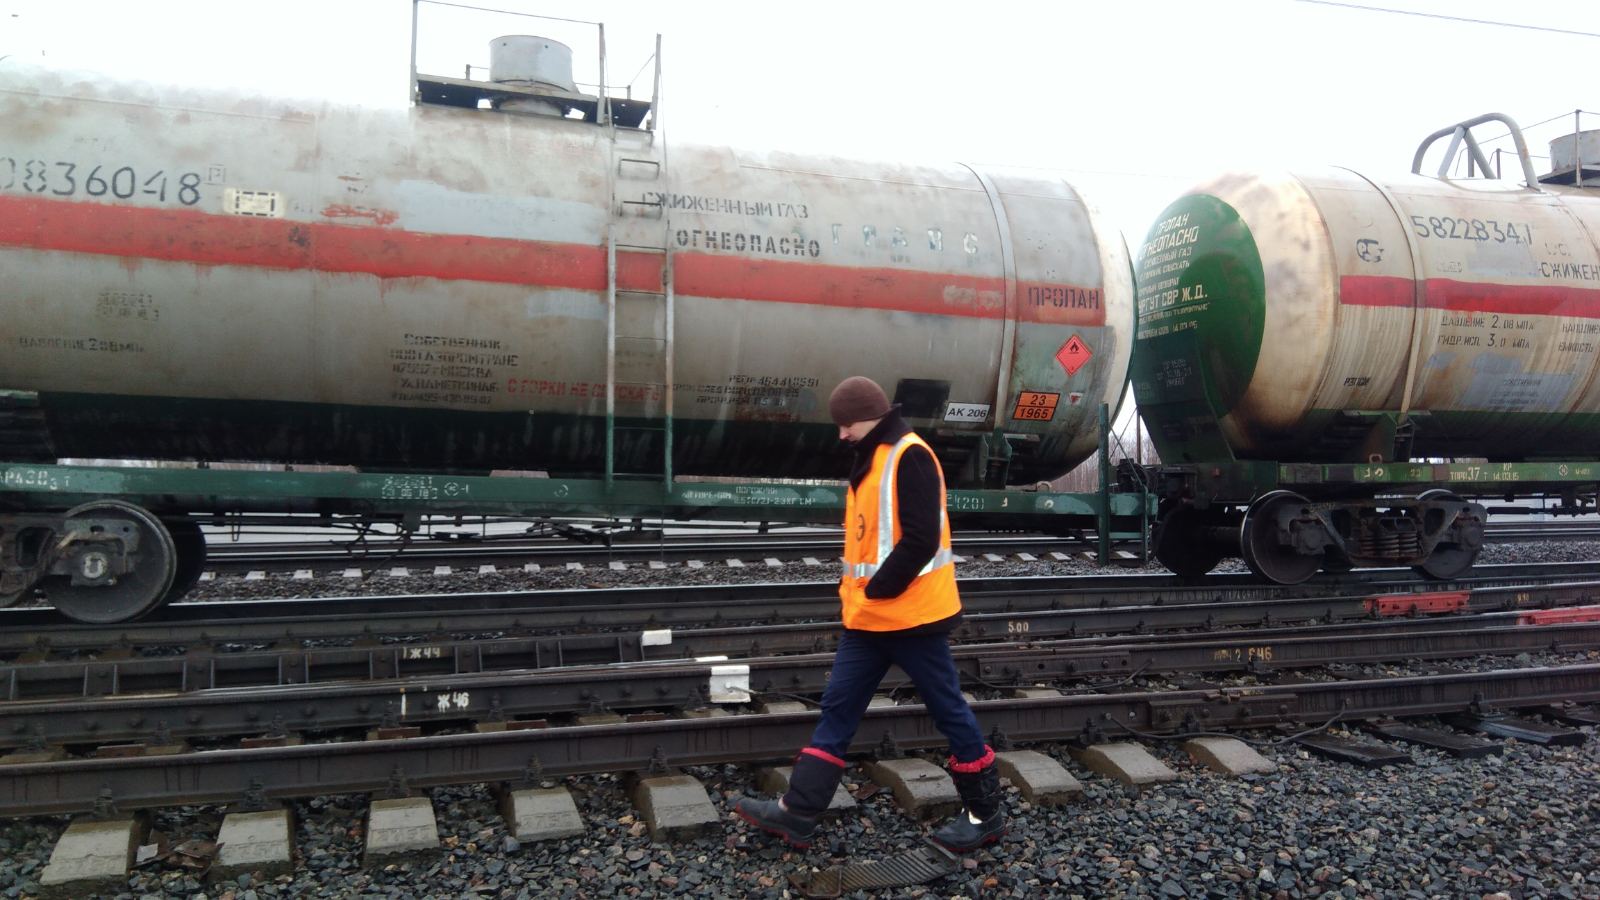 Цистерна сошла с рельсов: в Ярославской области задержали пассажирские поезда